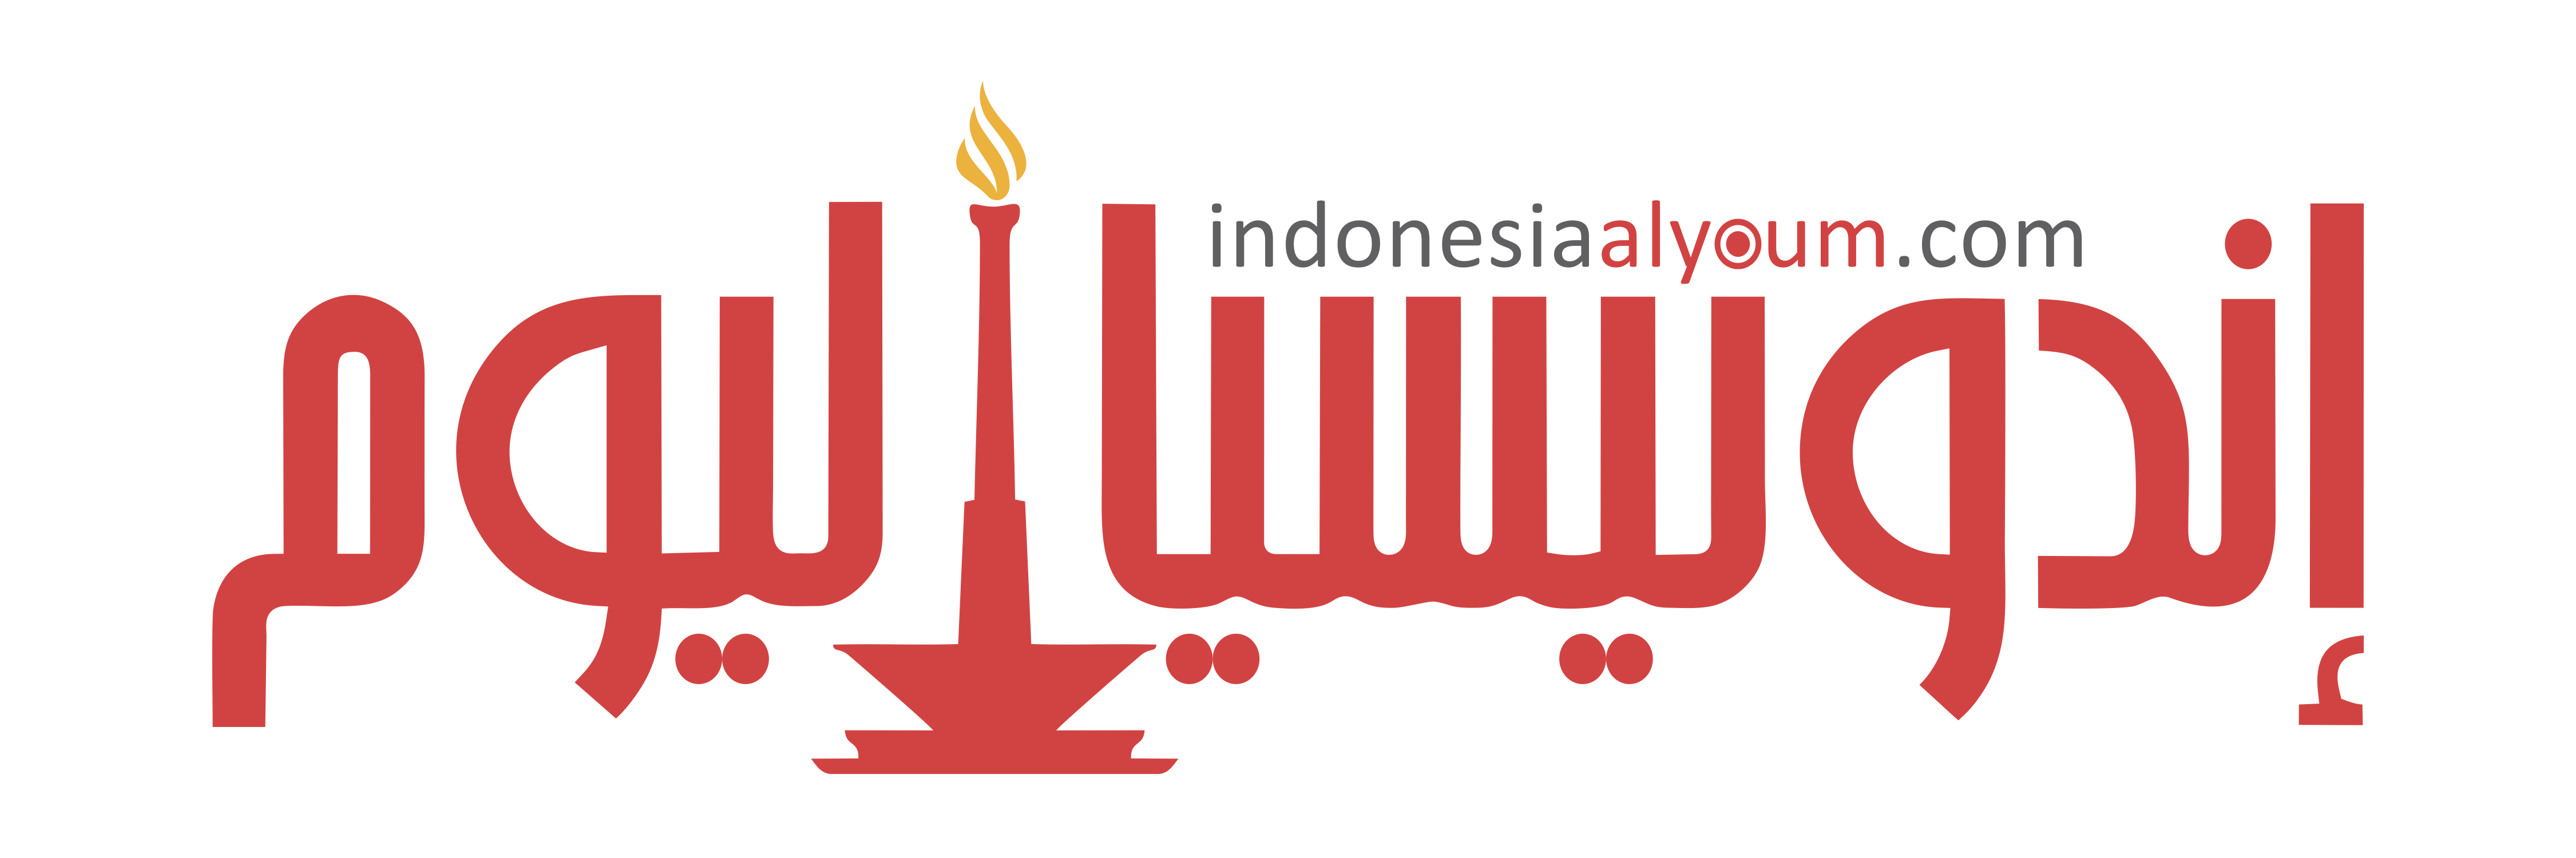 indonesiaalyoum